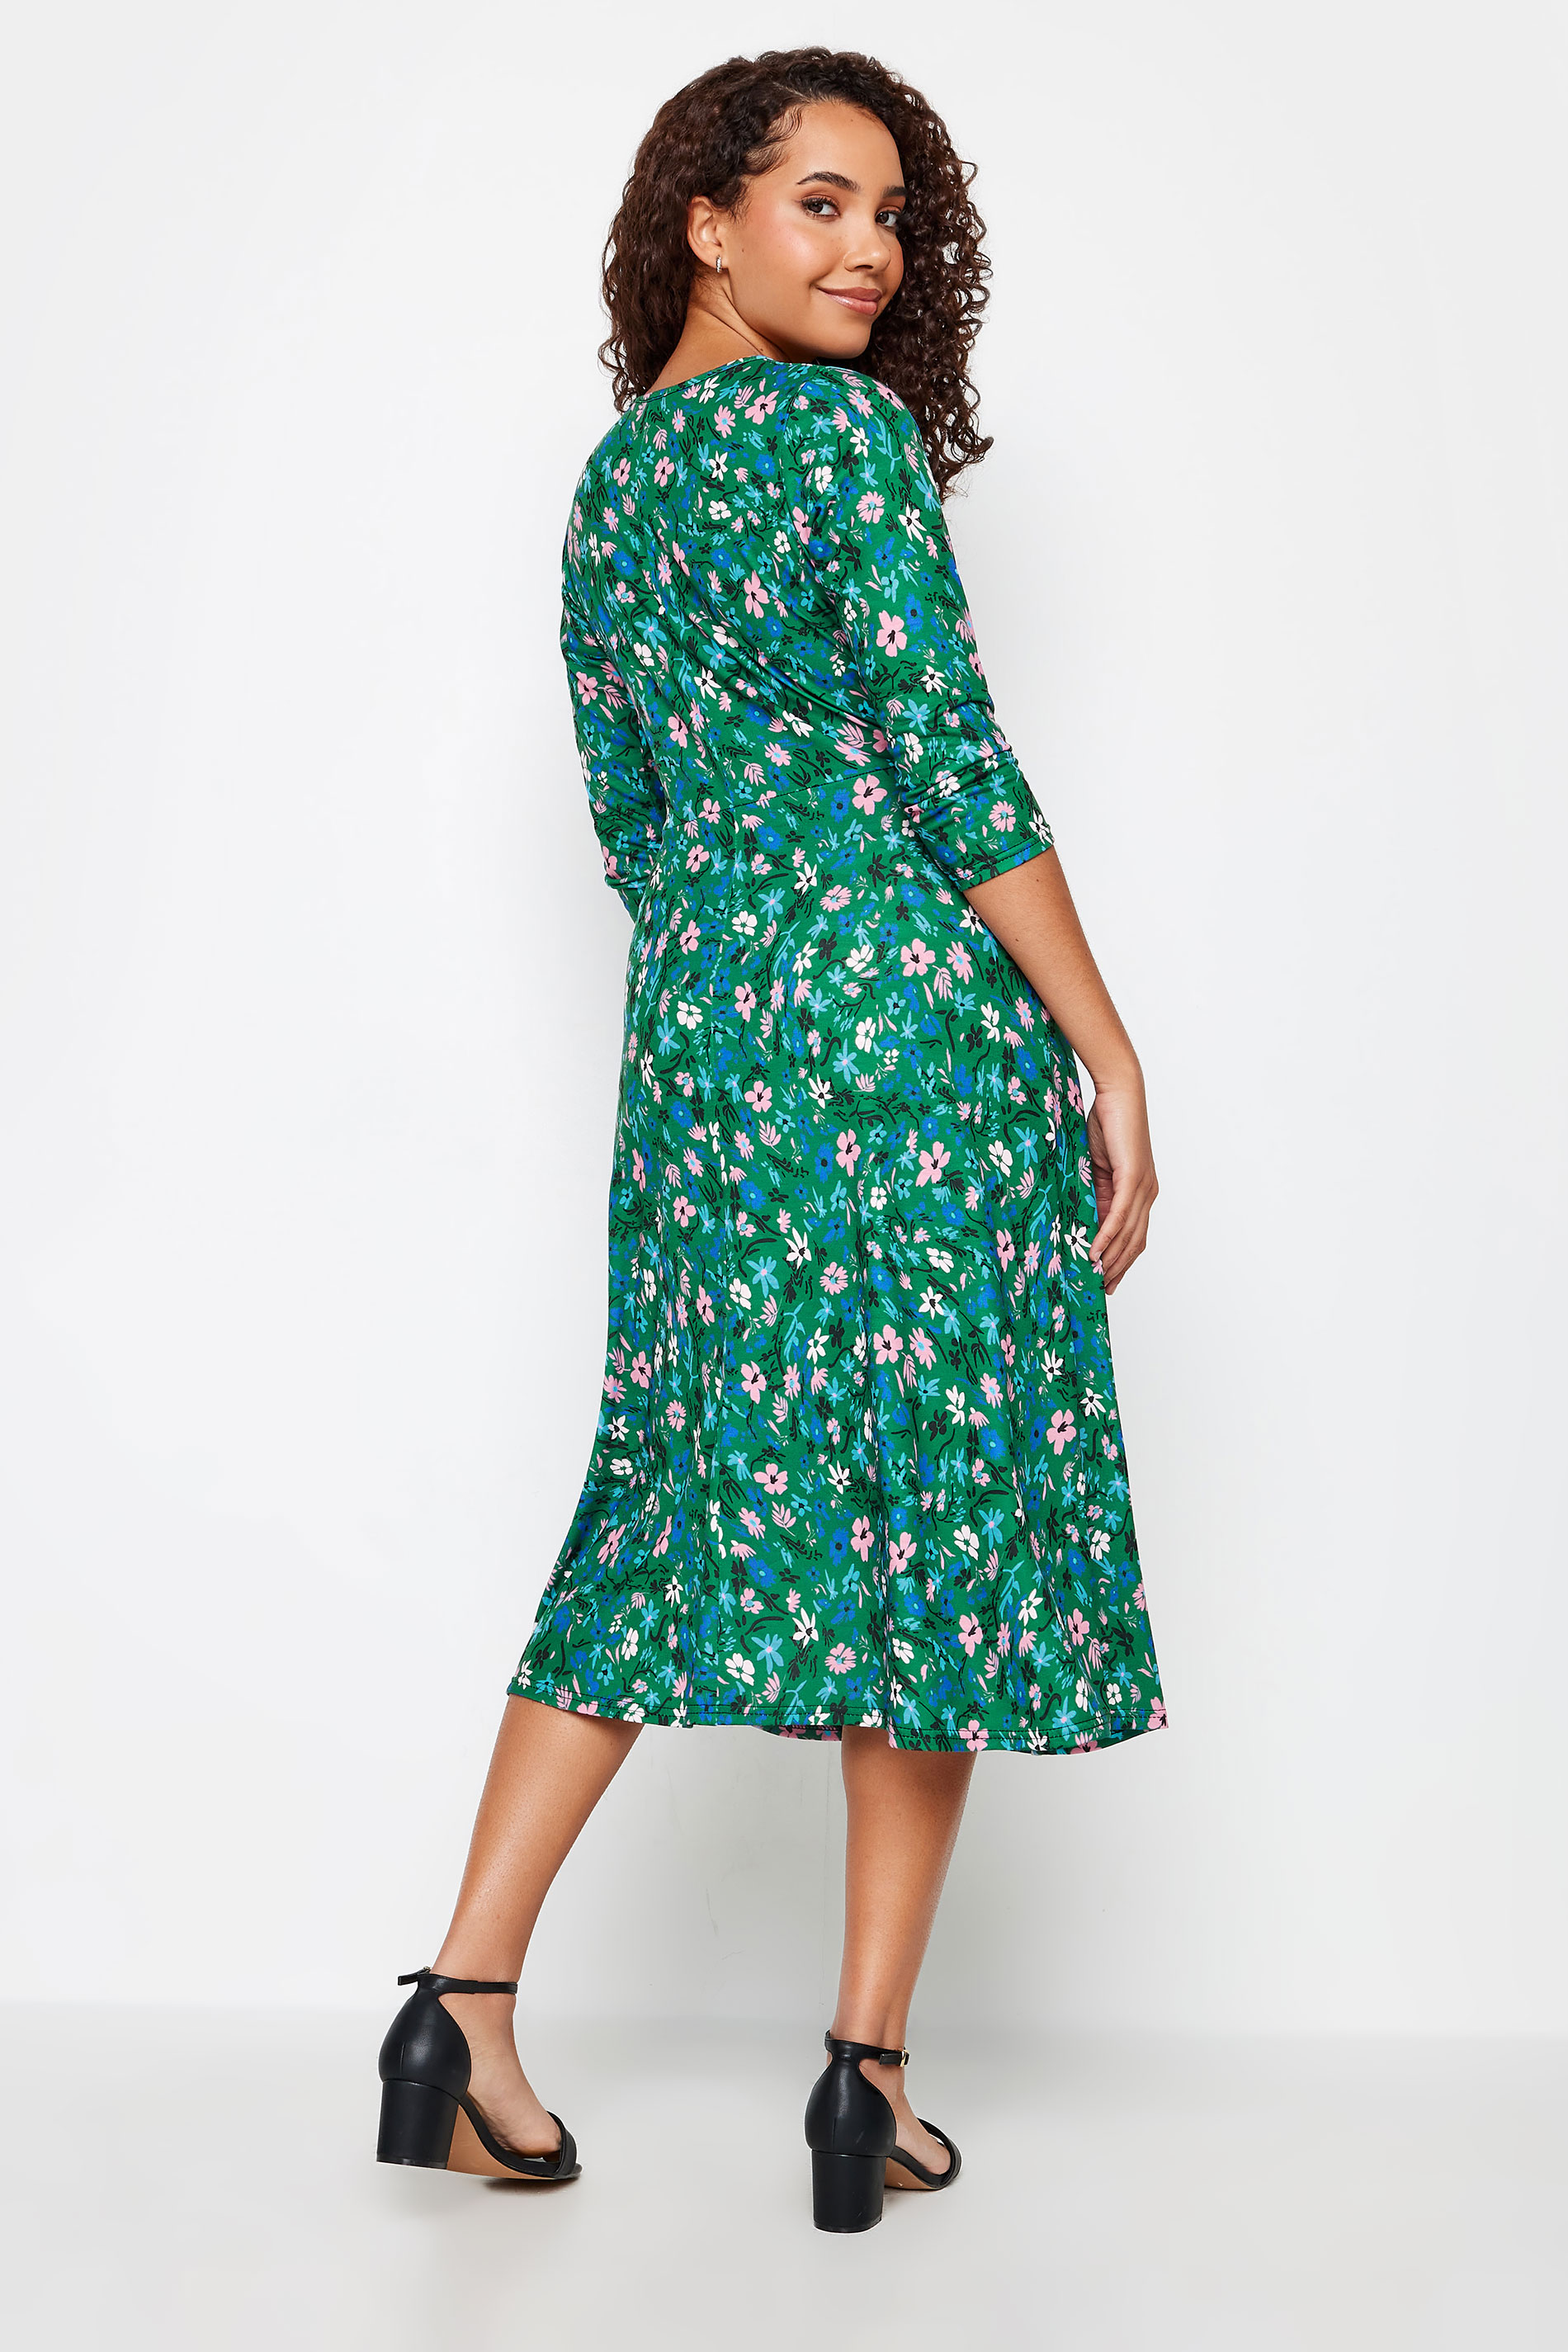 M&Co Green Floral Print Wrap Dress | M&Co  3